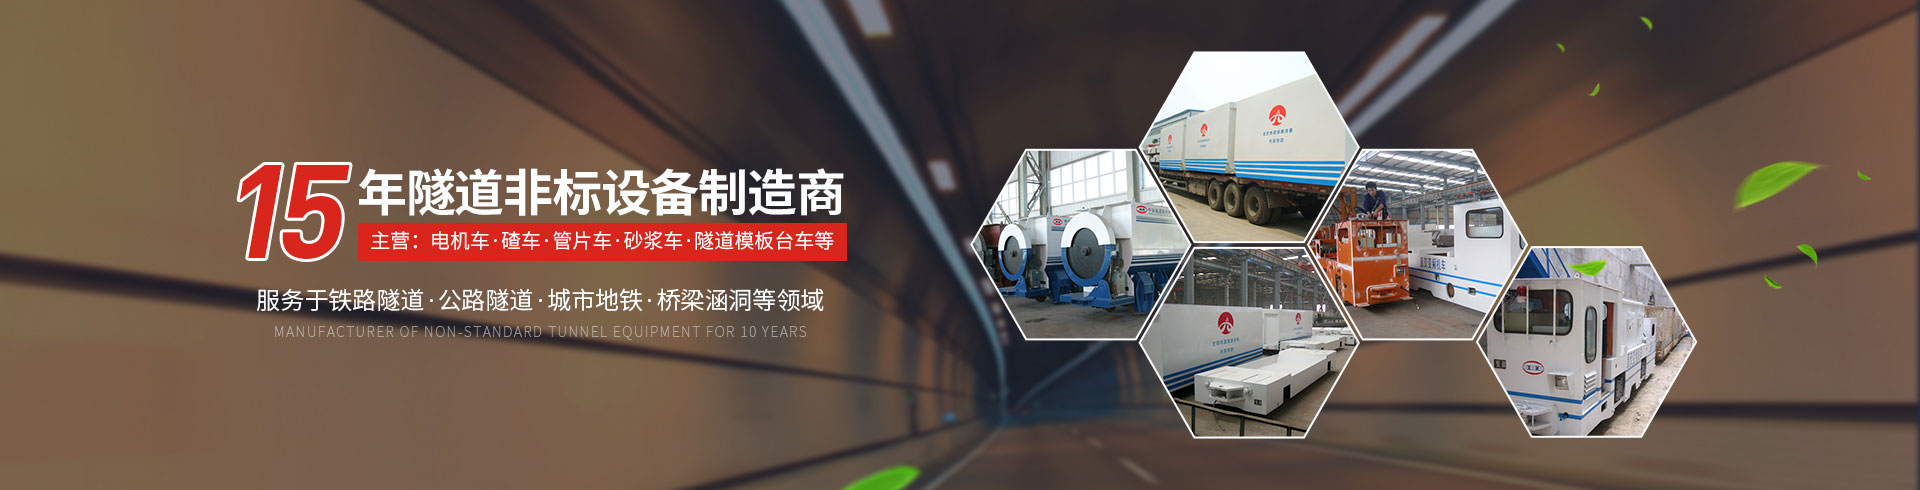 河南翔康隧道设备制造有限公司